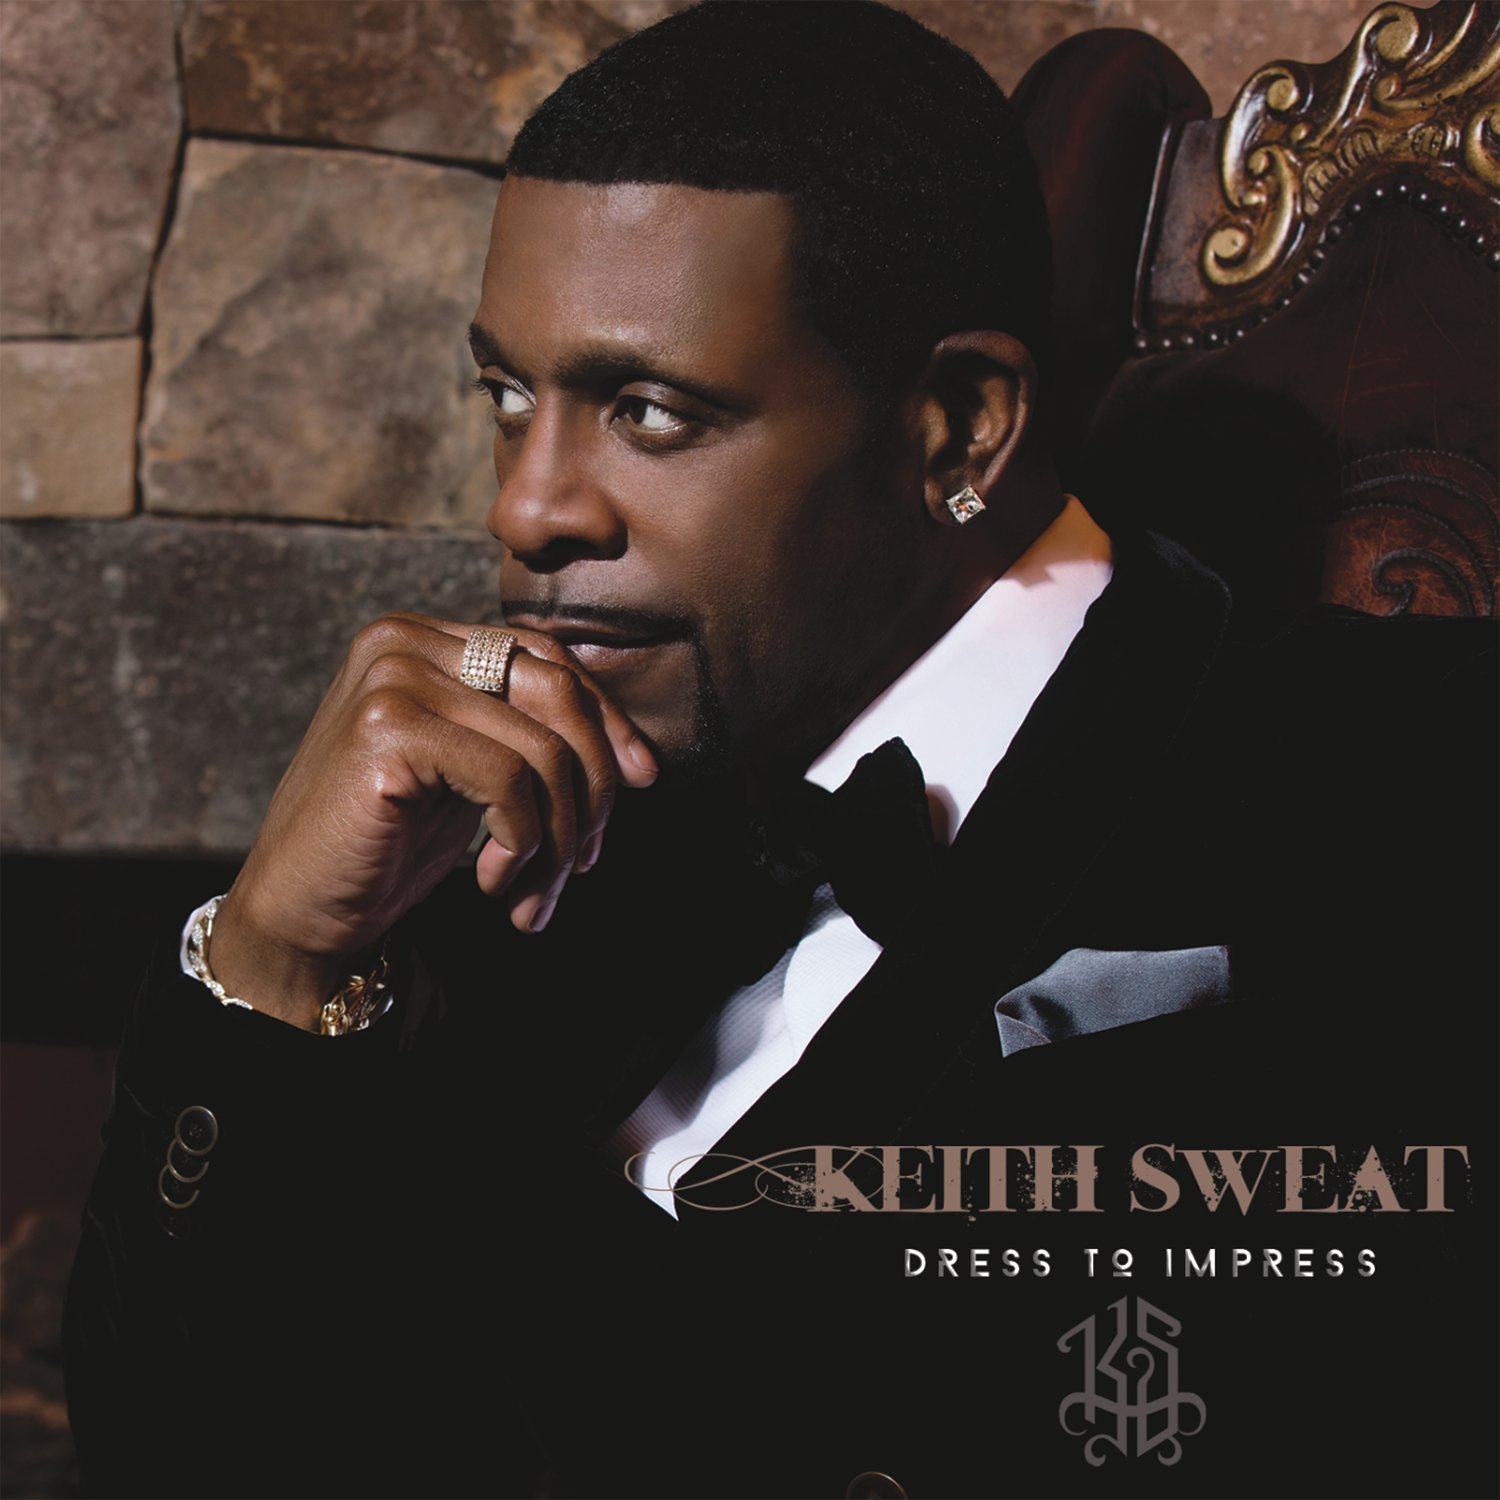 Stream Keith Sweat's New Album "Dress to Impress"